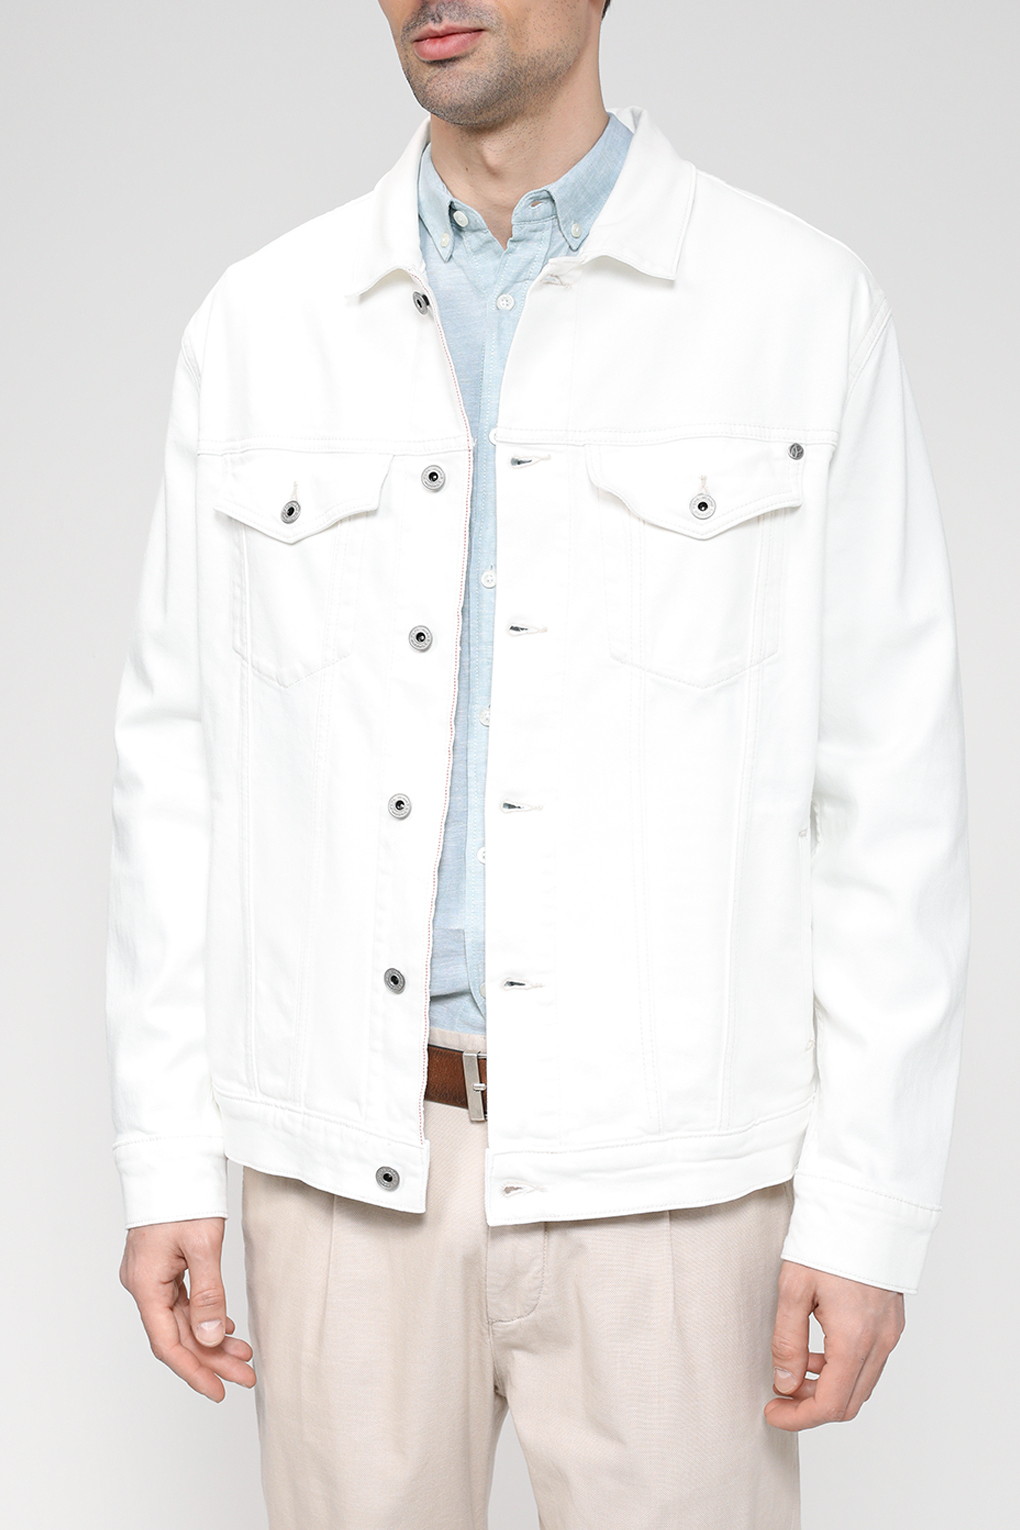 Джинсовая куртка мужская Pepe Jeans PM402712 белая L